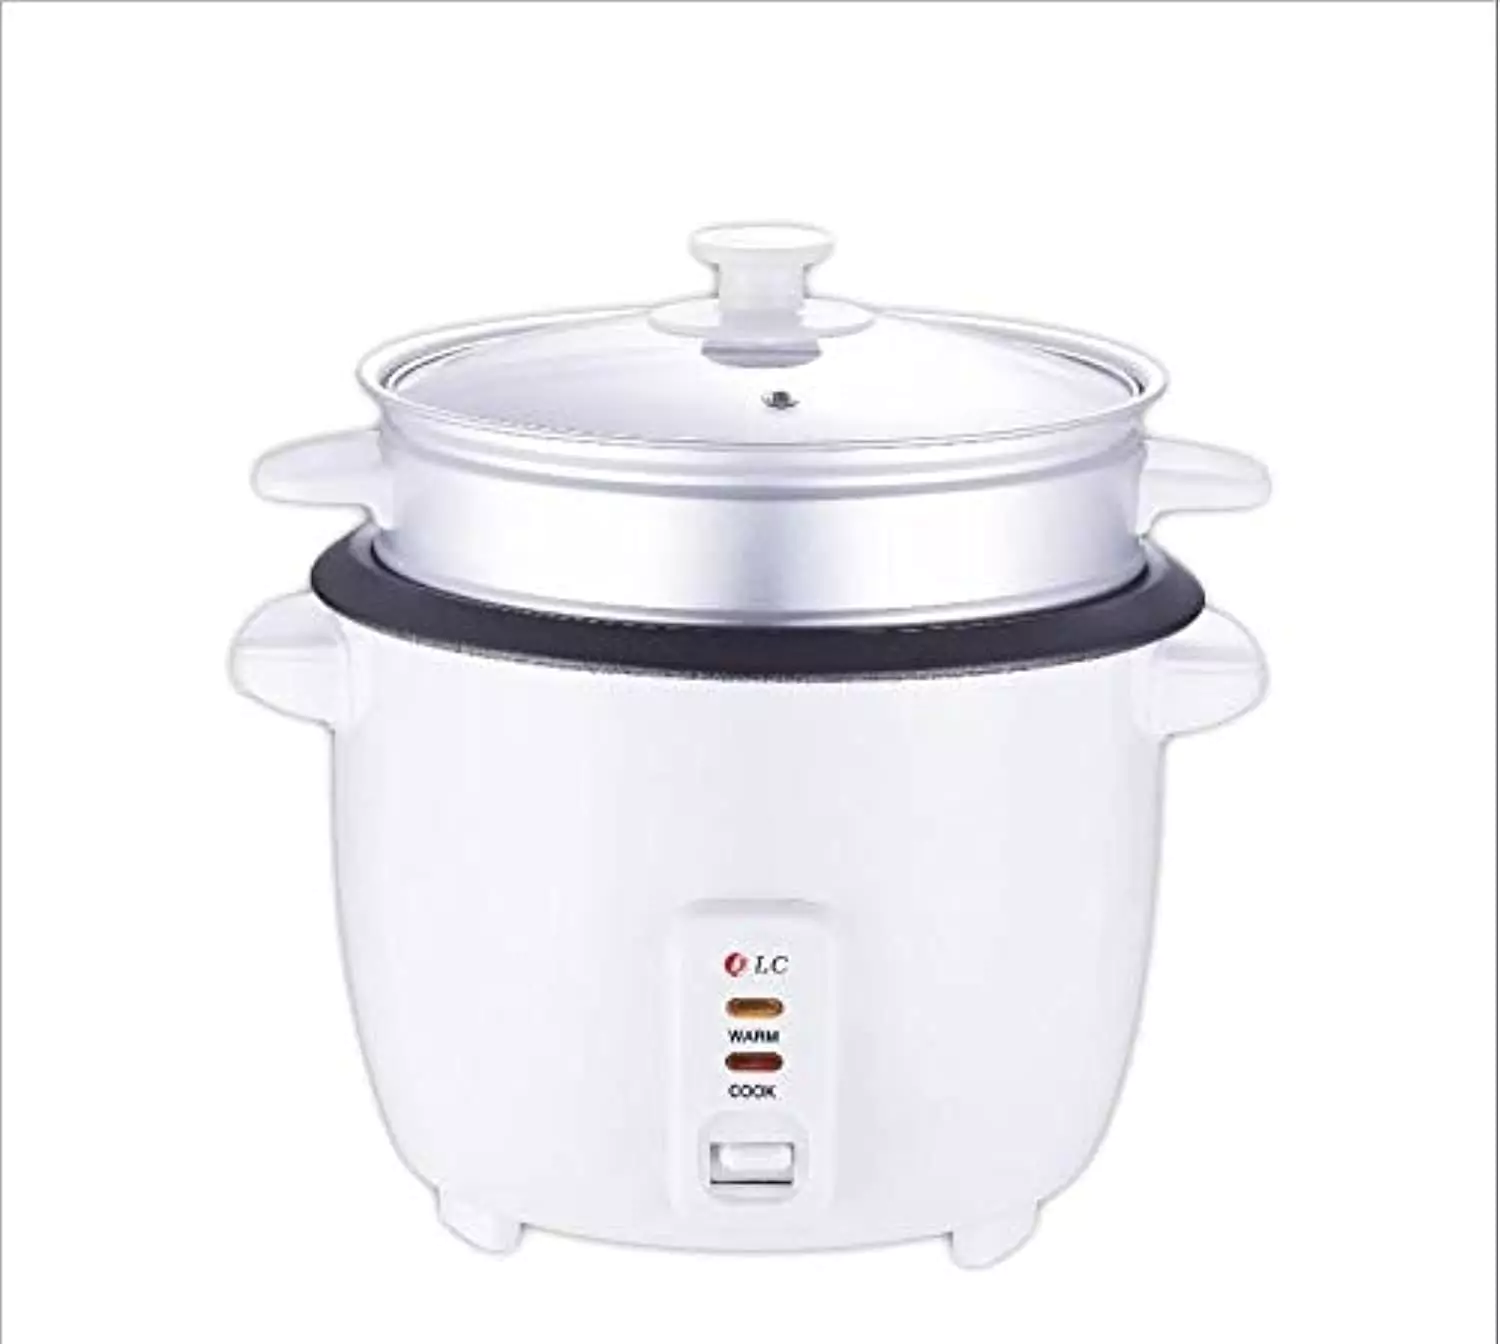 DLC Rice Cooker - 1.5 Liter Capacity - 500 Watt DLC 815